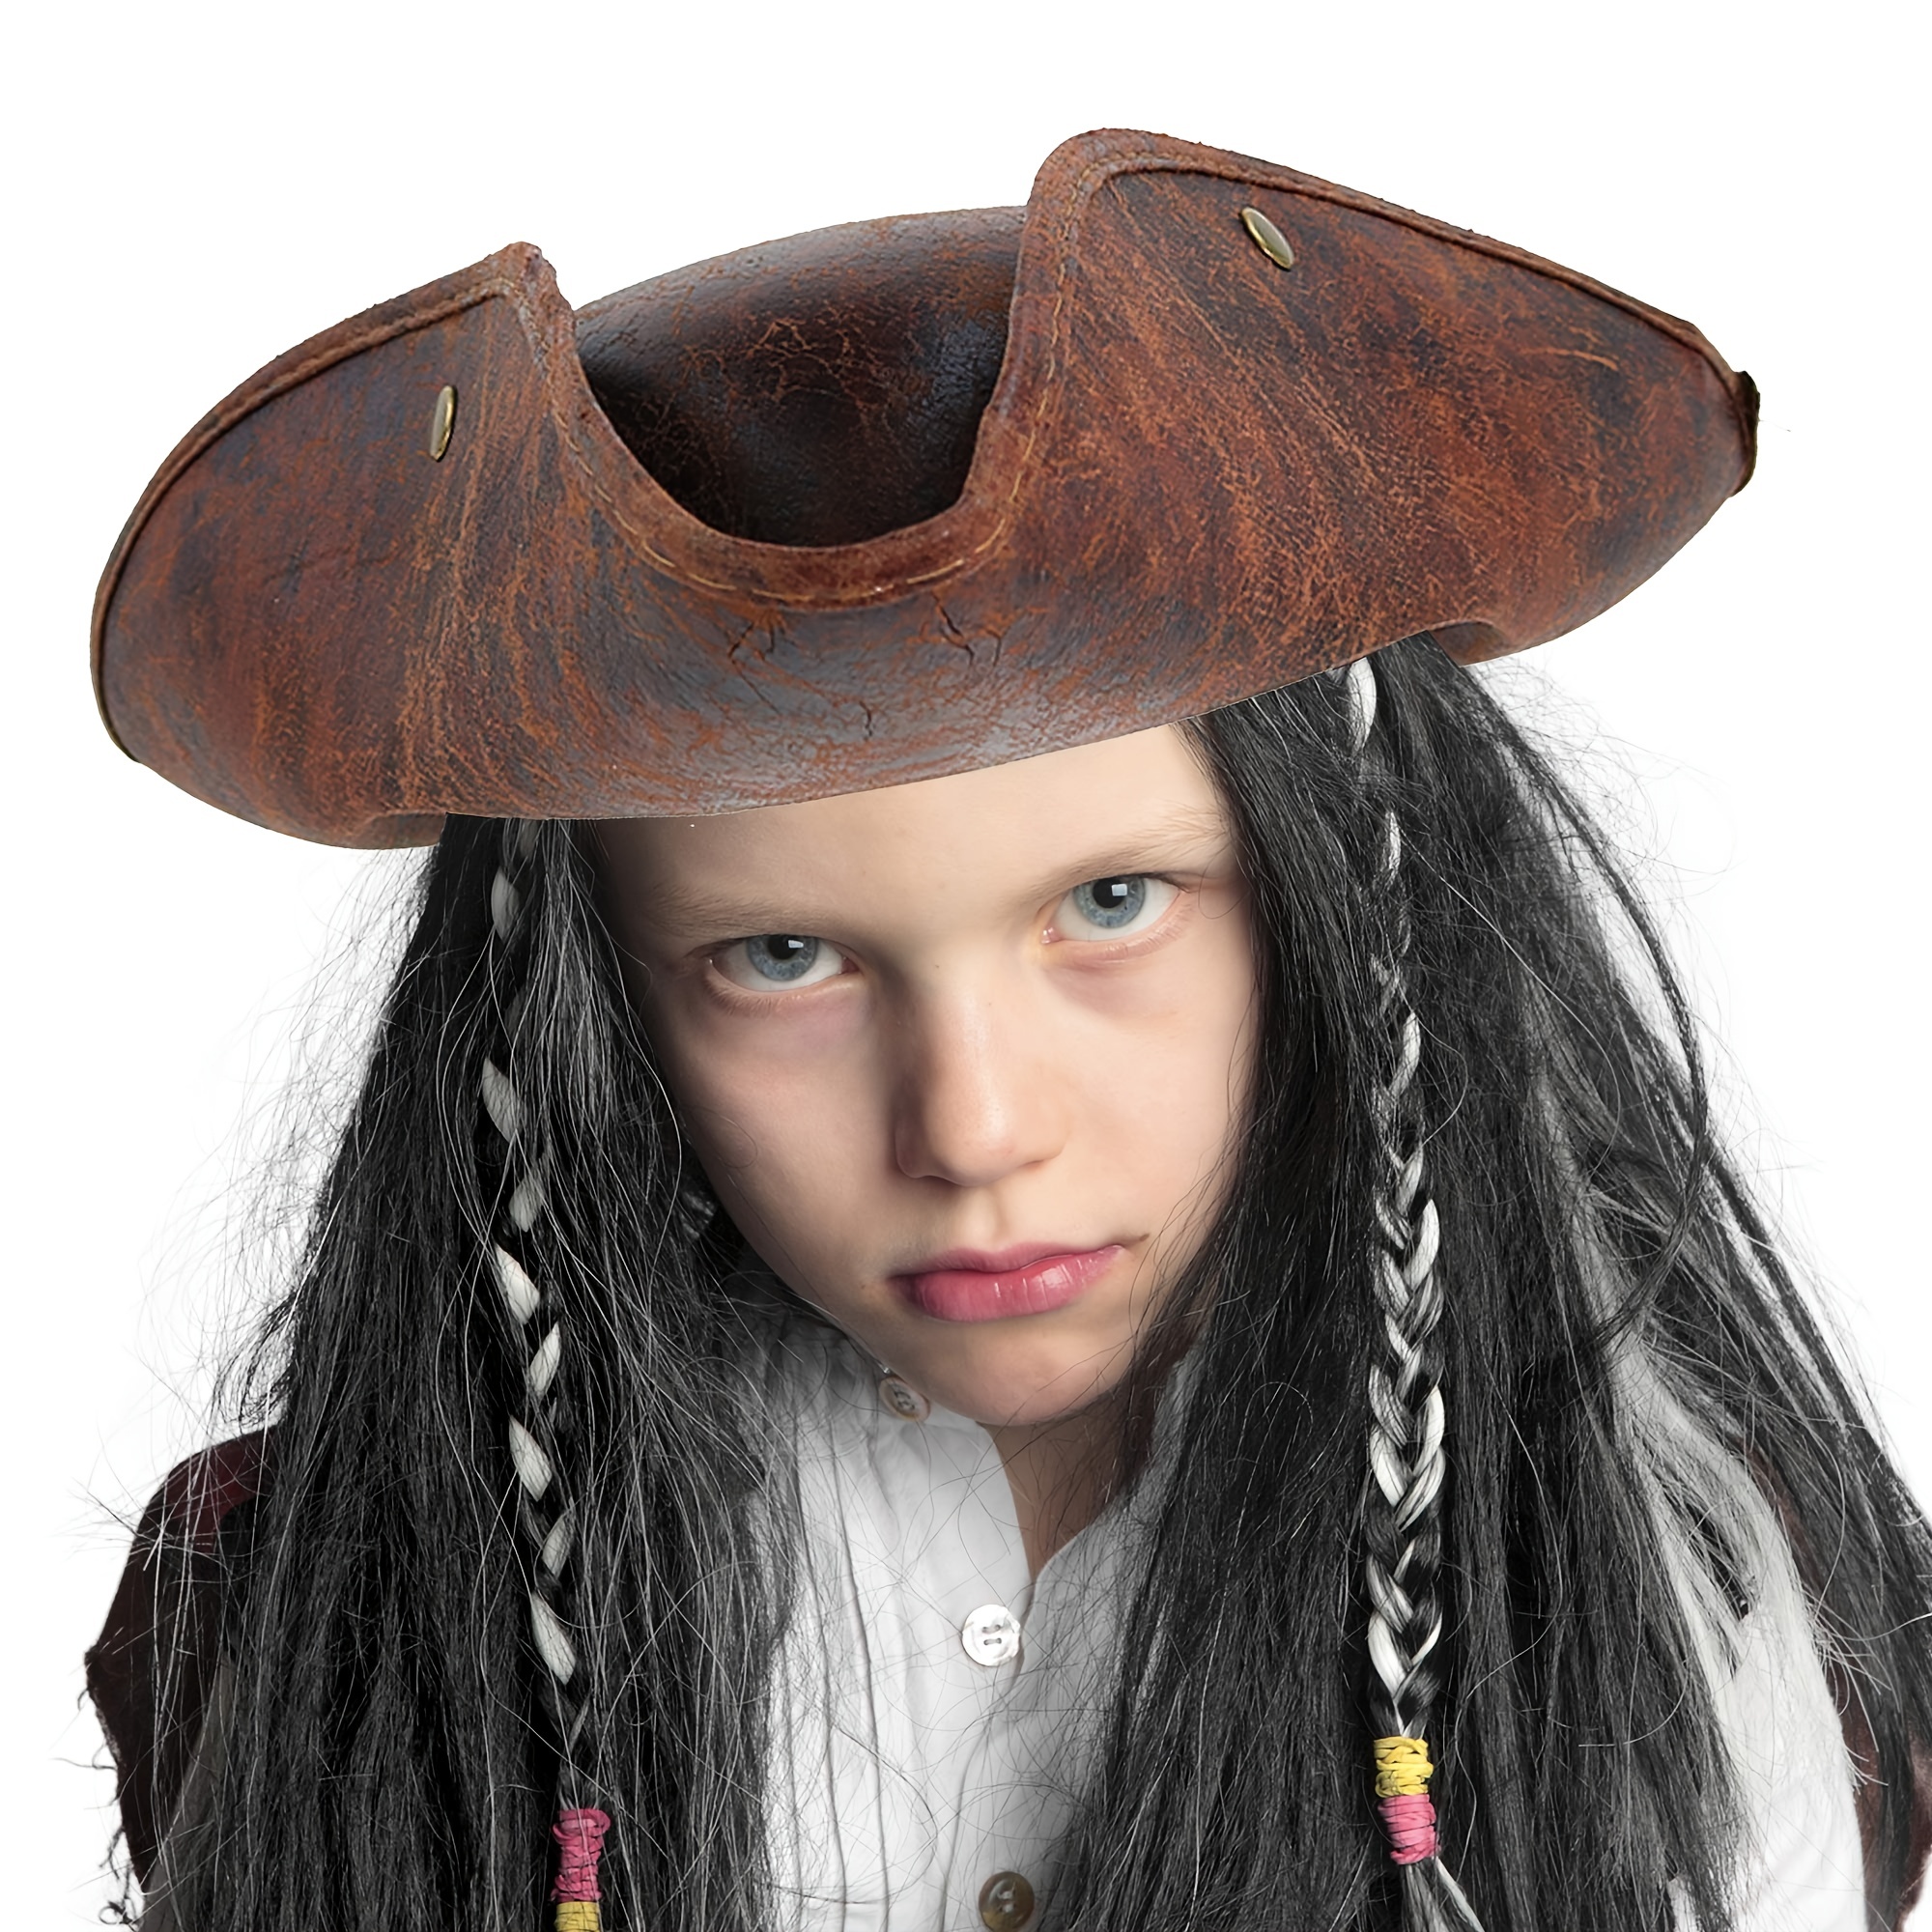 9 piezas de accesorios para disfraz de capitán pirata, incluye 3 piezas de  sombrero de pirata con estampado de calavera, gorra de disfraz de capitán